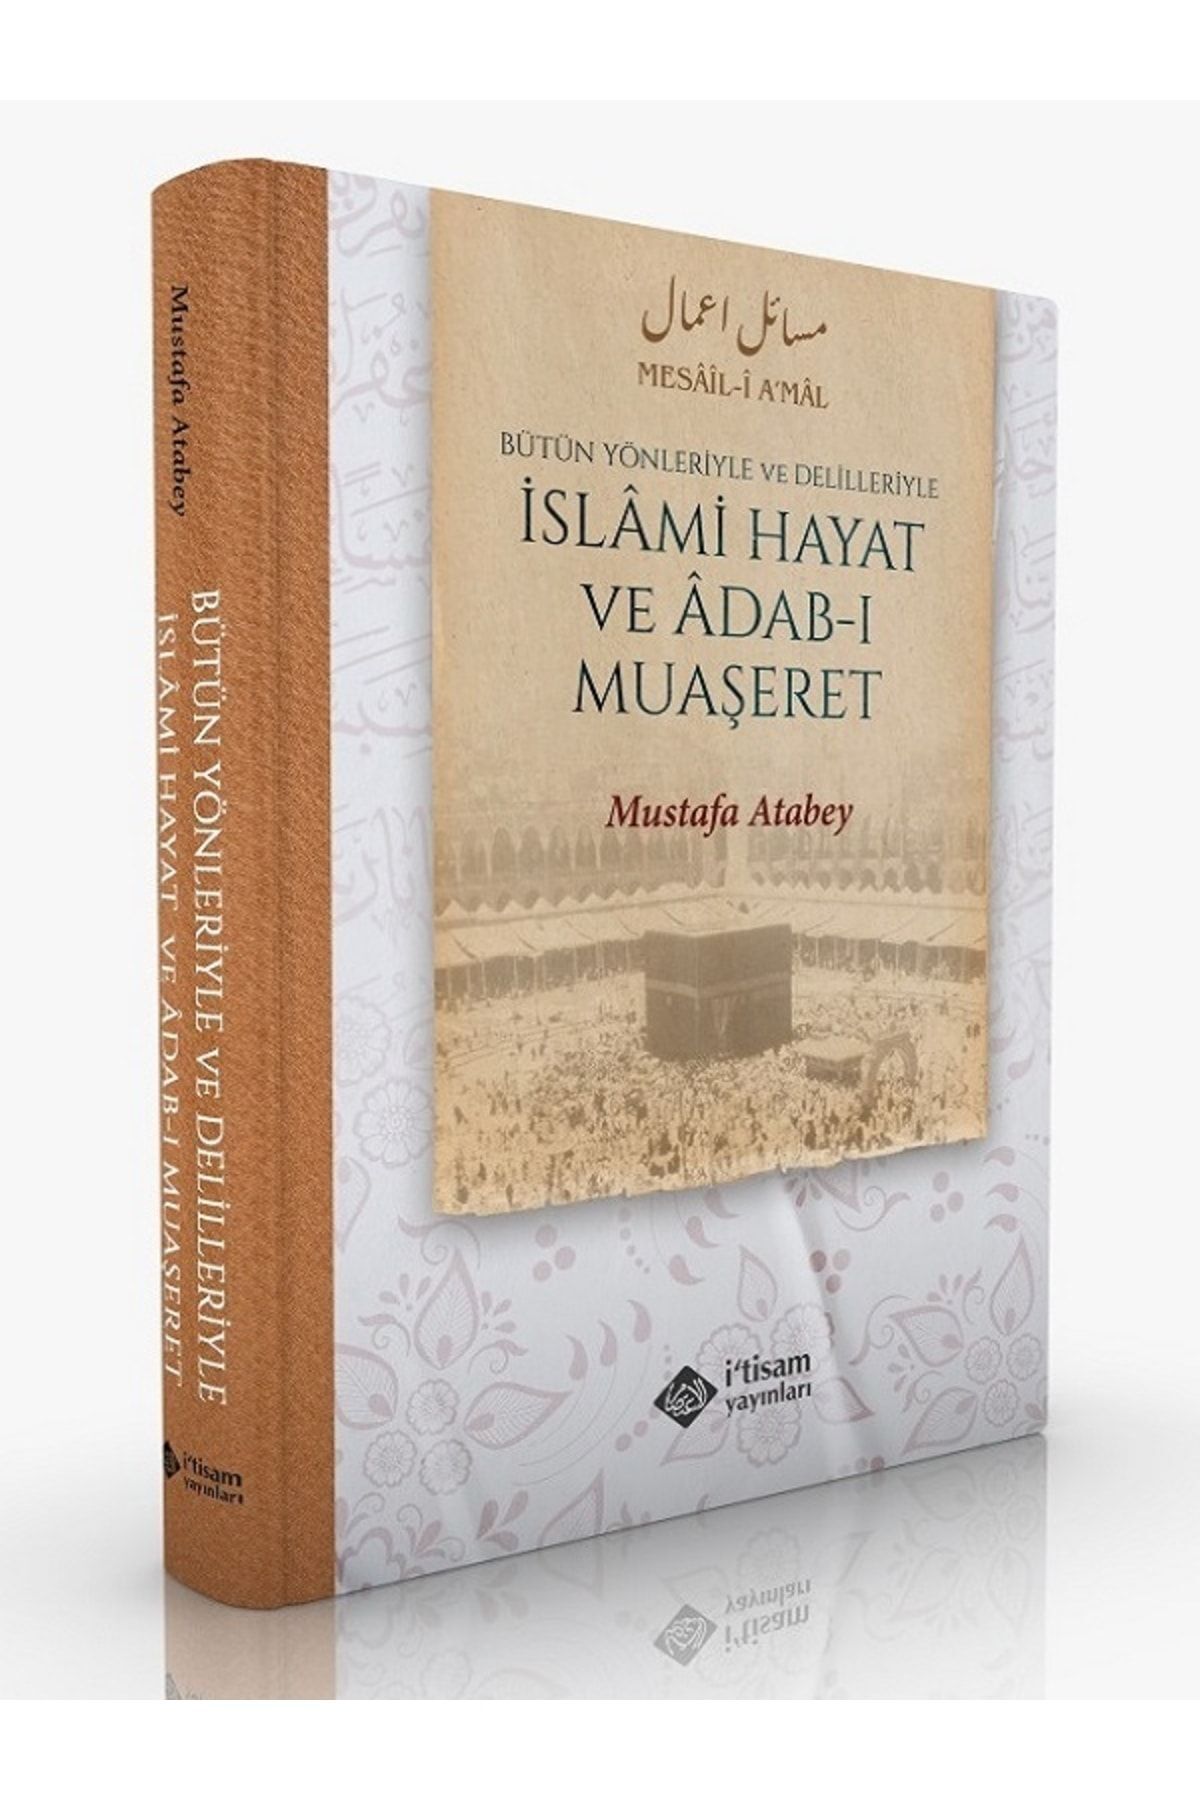 itisam yayınları Islami Hayat Ve Adabı Muaşeret Bütün Yönleriyle Ve Delilleriyle, Mustafa Atabey